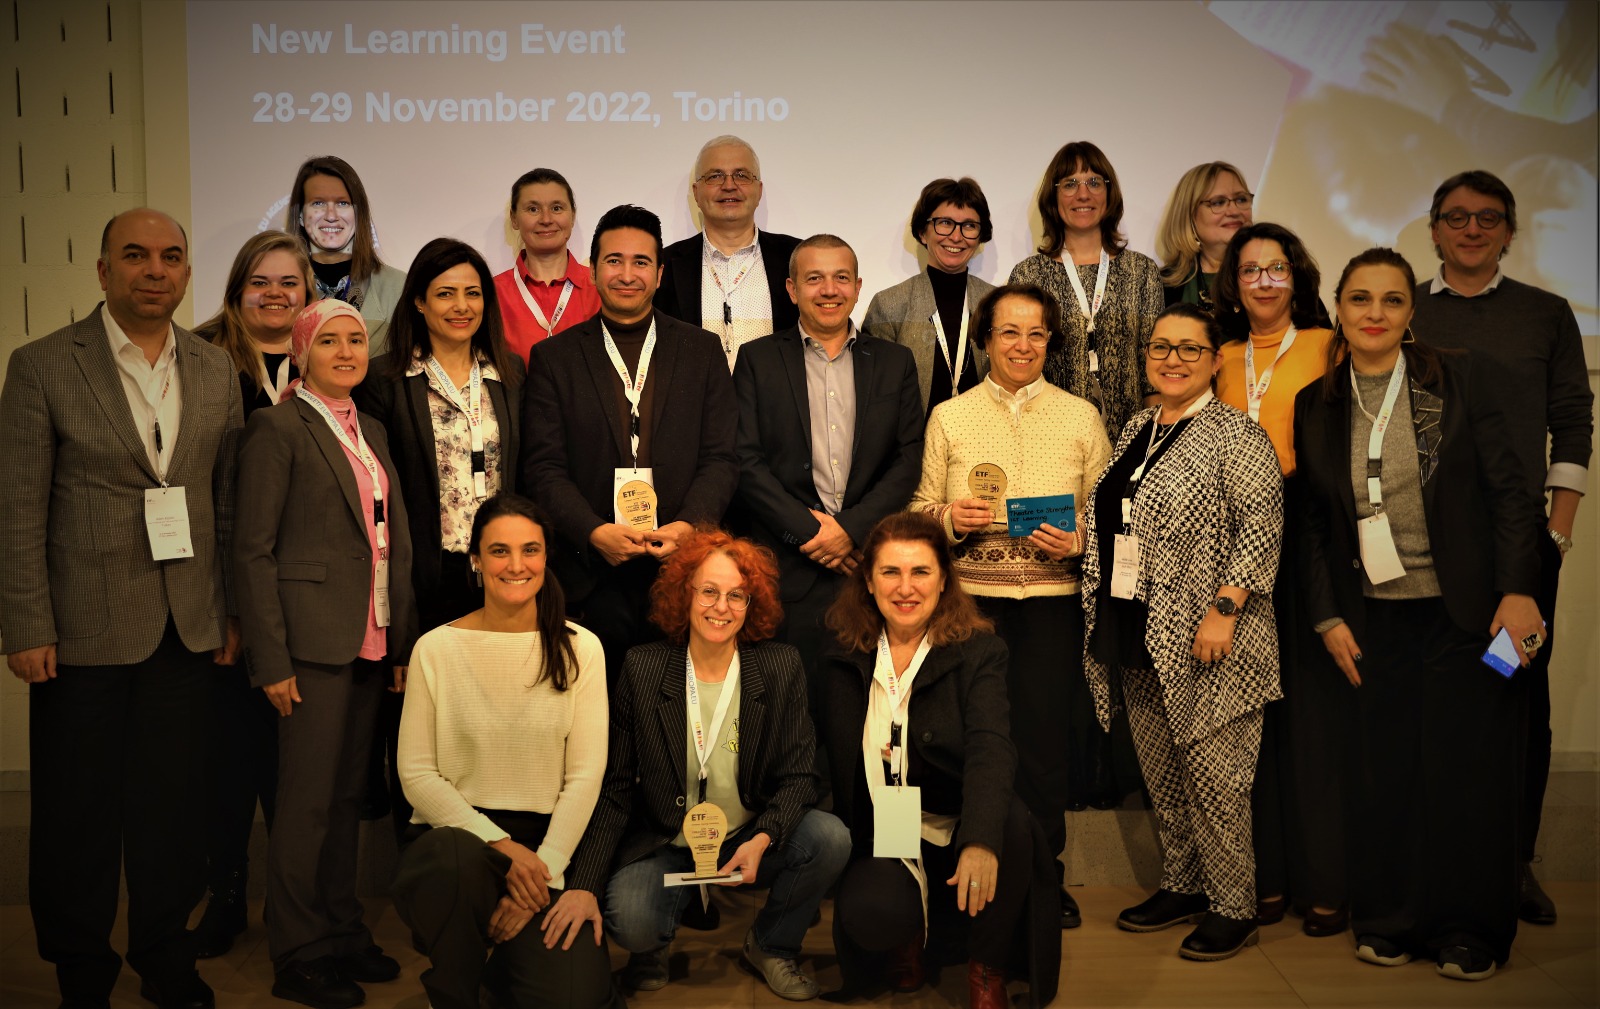 הרפתקאות Cell Aviv והפיינליסטים באירוע הגמר לחדשנות בחינוך בטורינו